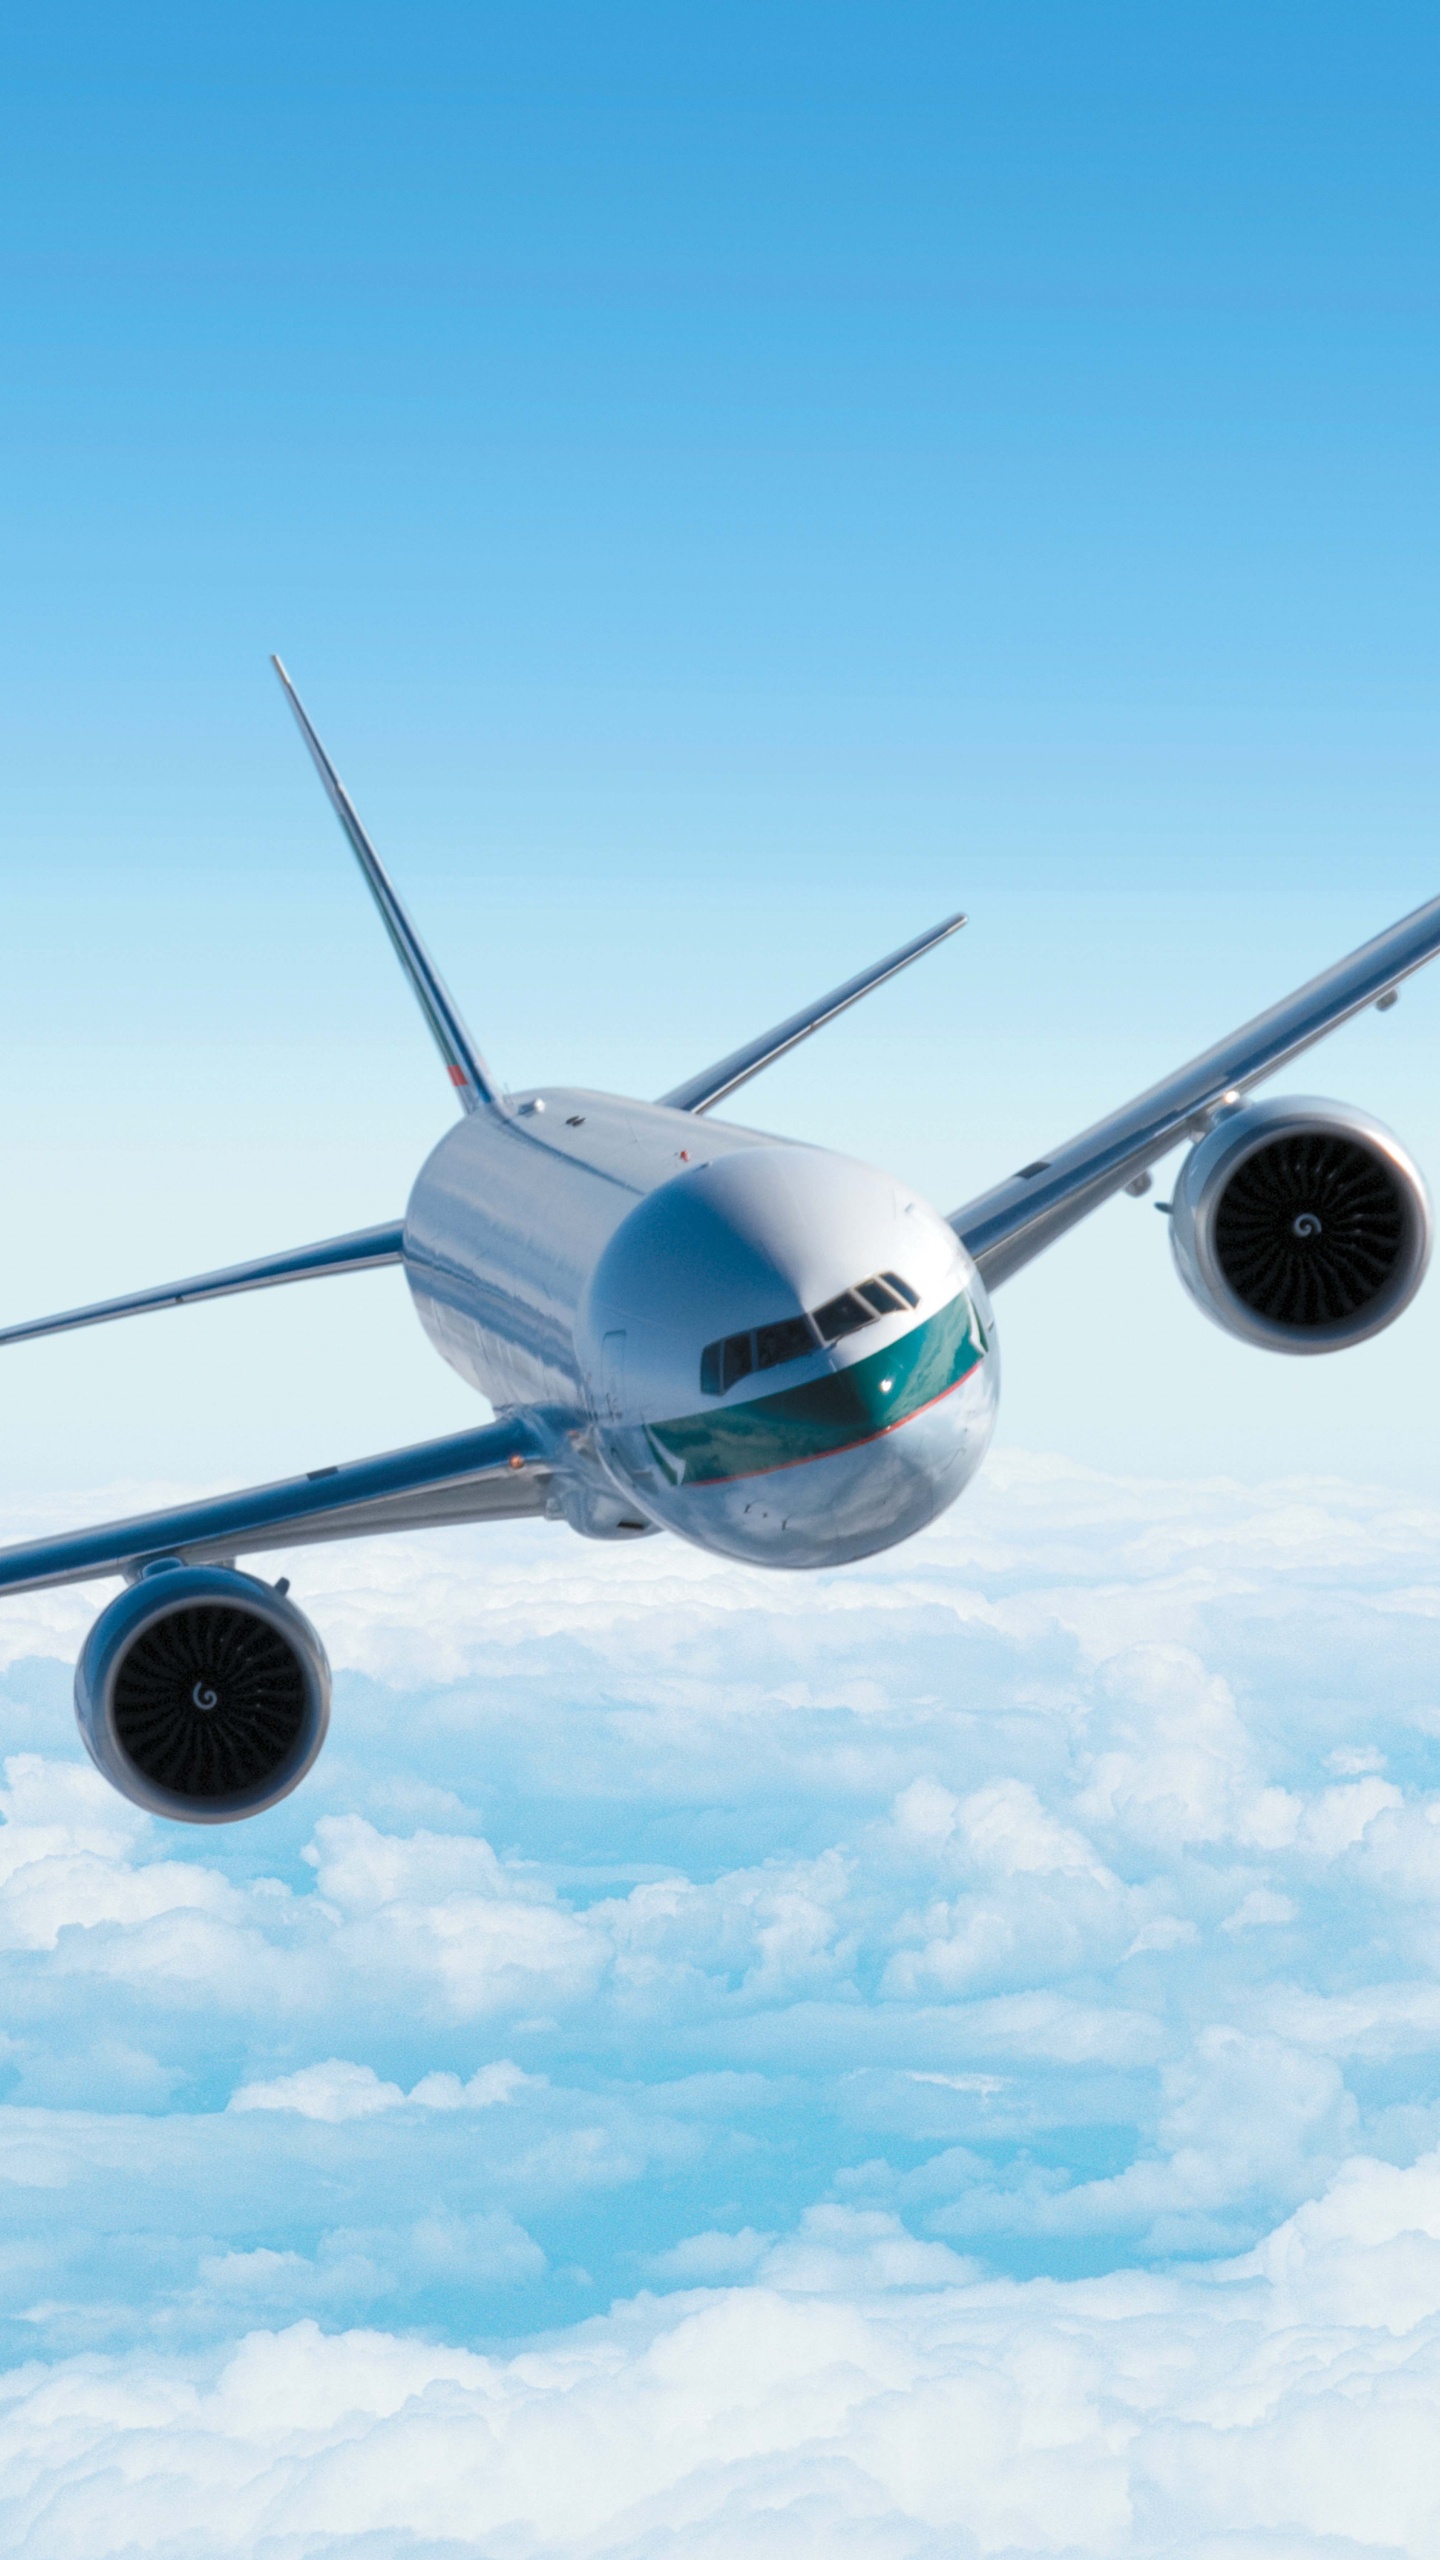 Weißes Flugzeug in Der Luft Unter Blauem Himmel Tagsüber. Wallpaper in 1440x2560 Resolution